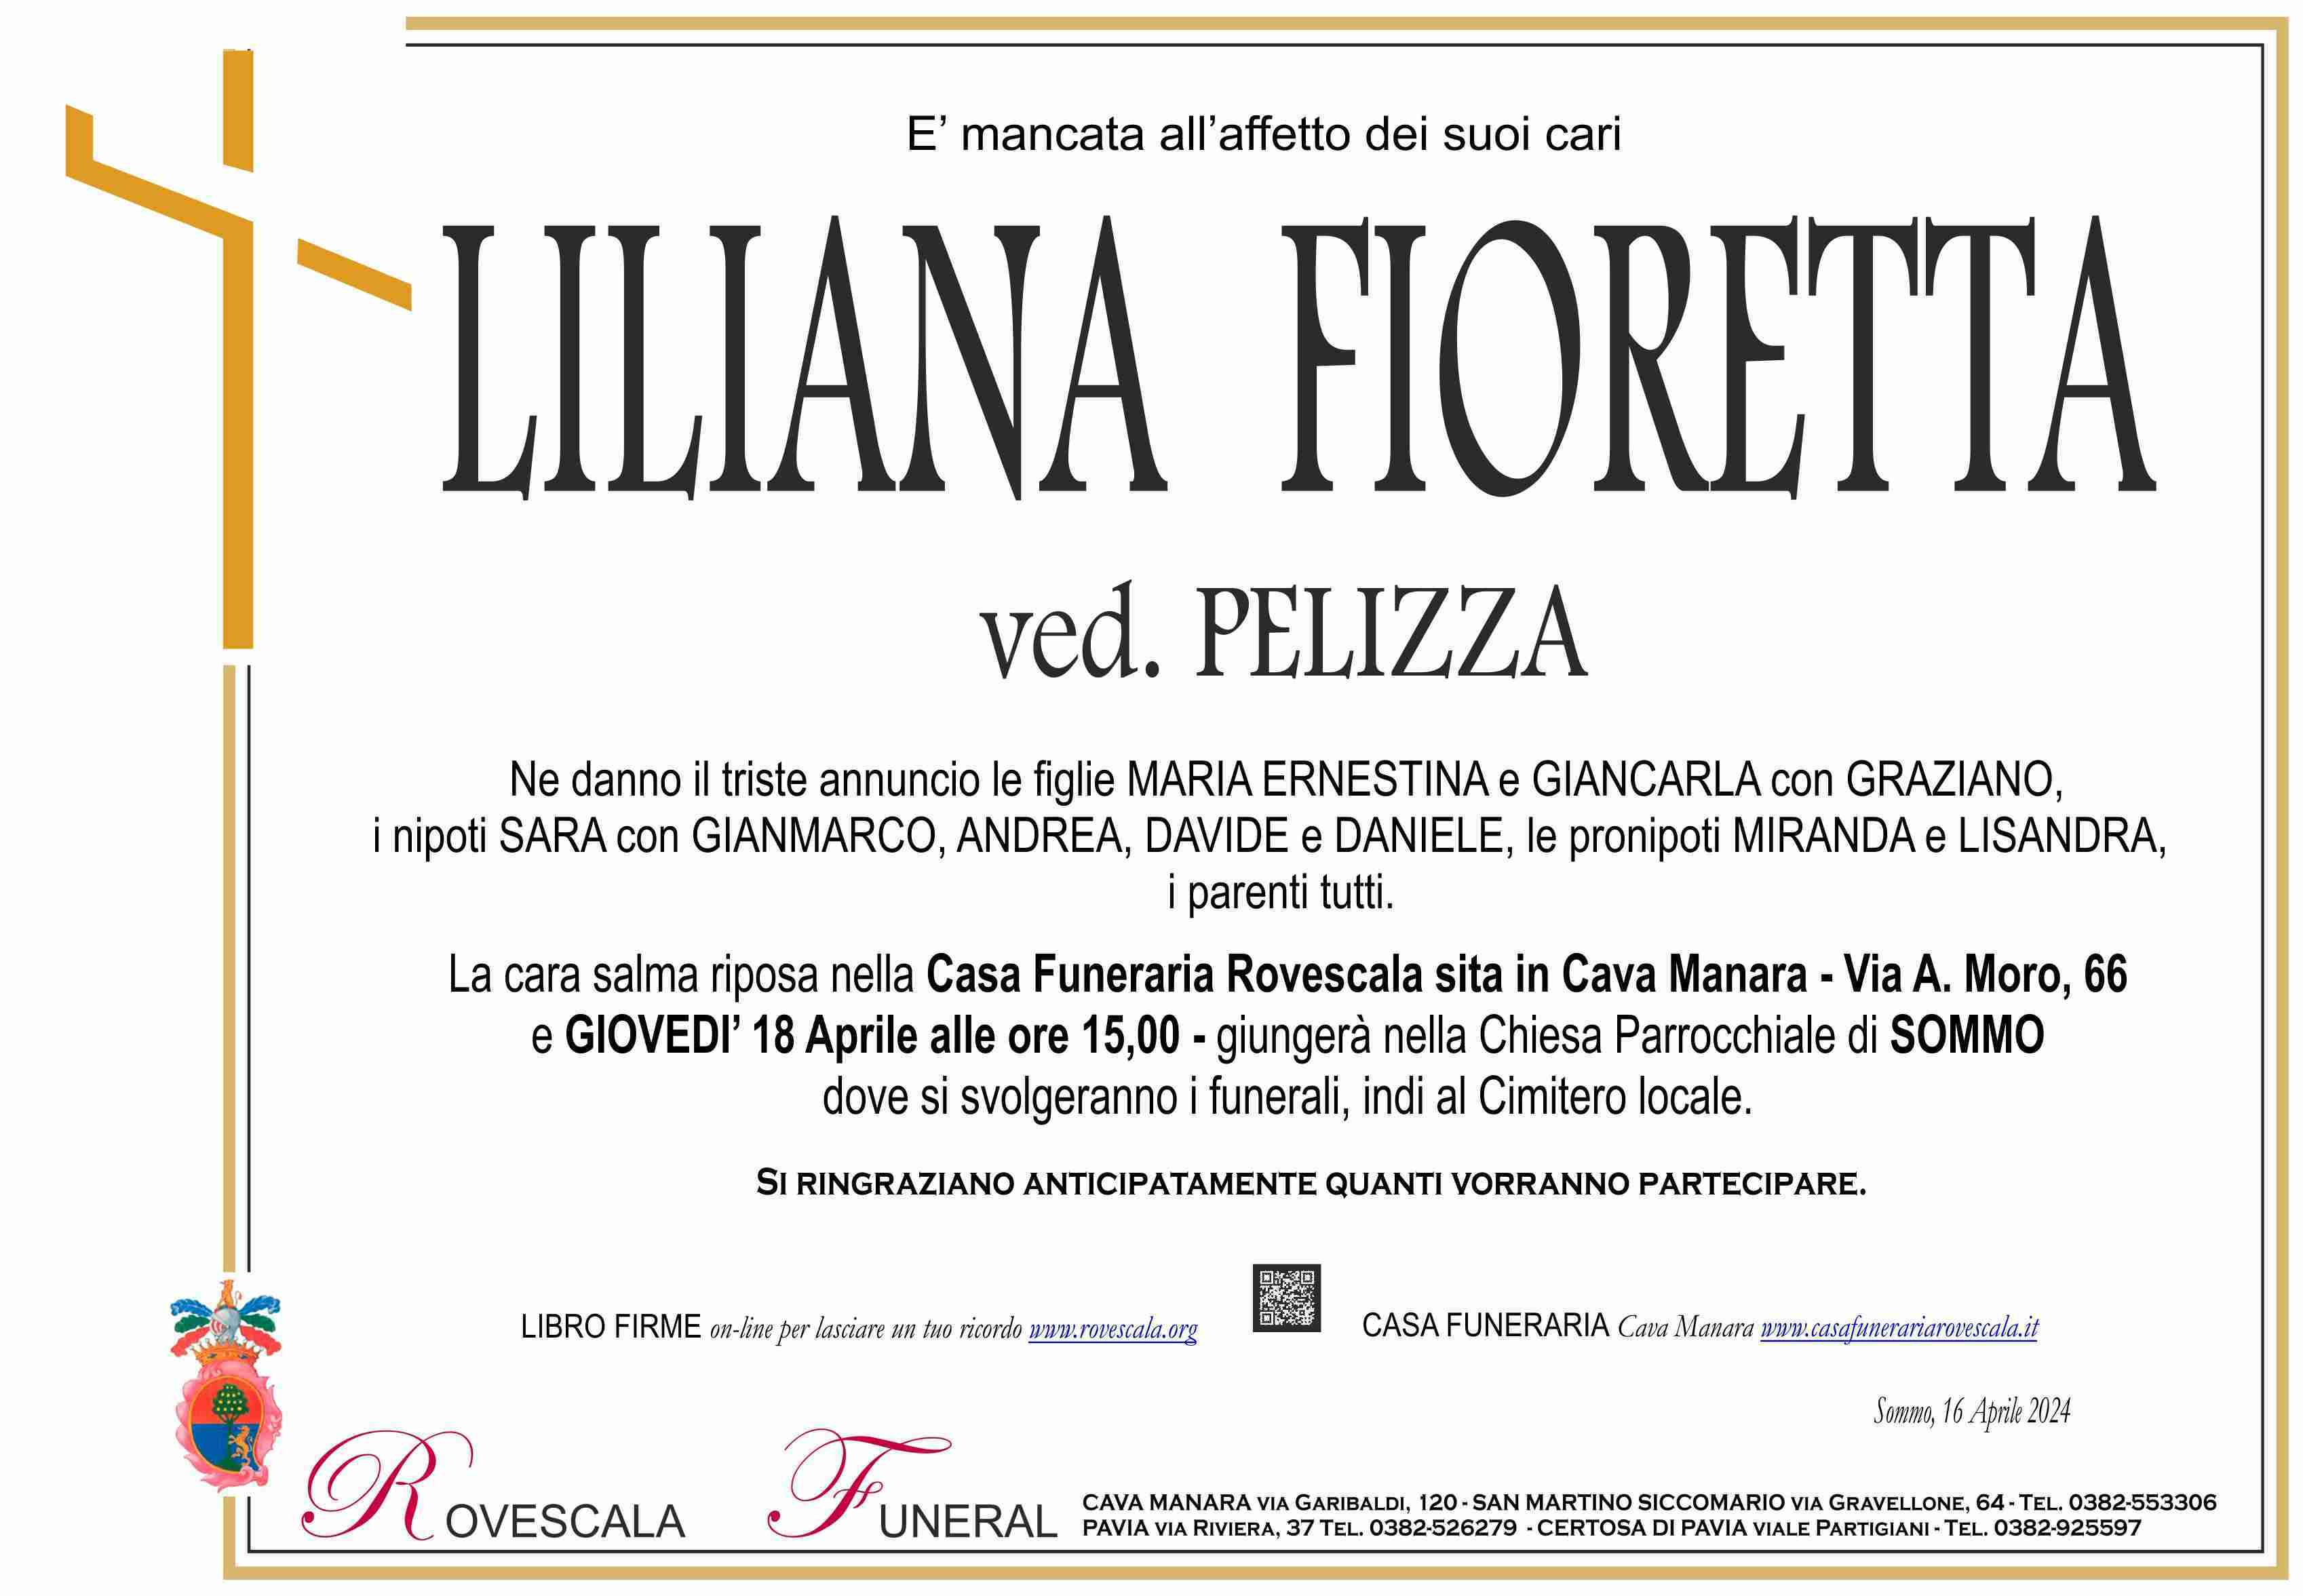 Liliana Fioretta